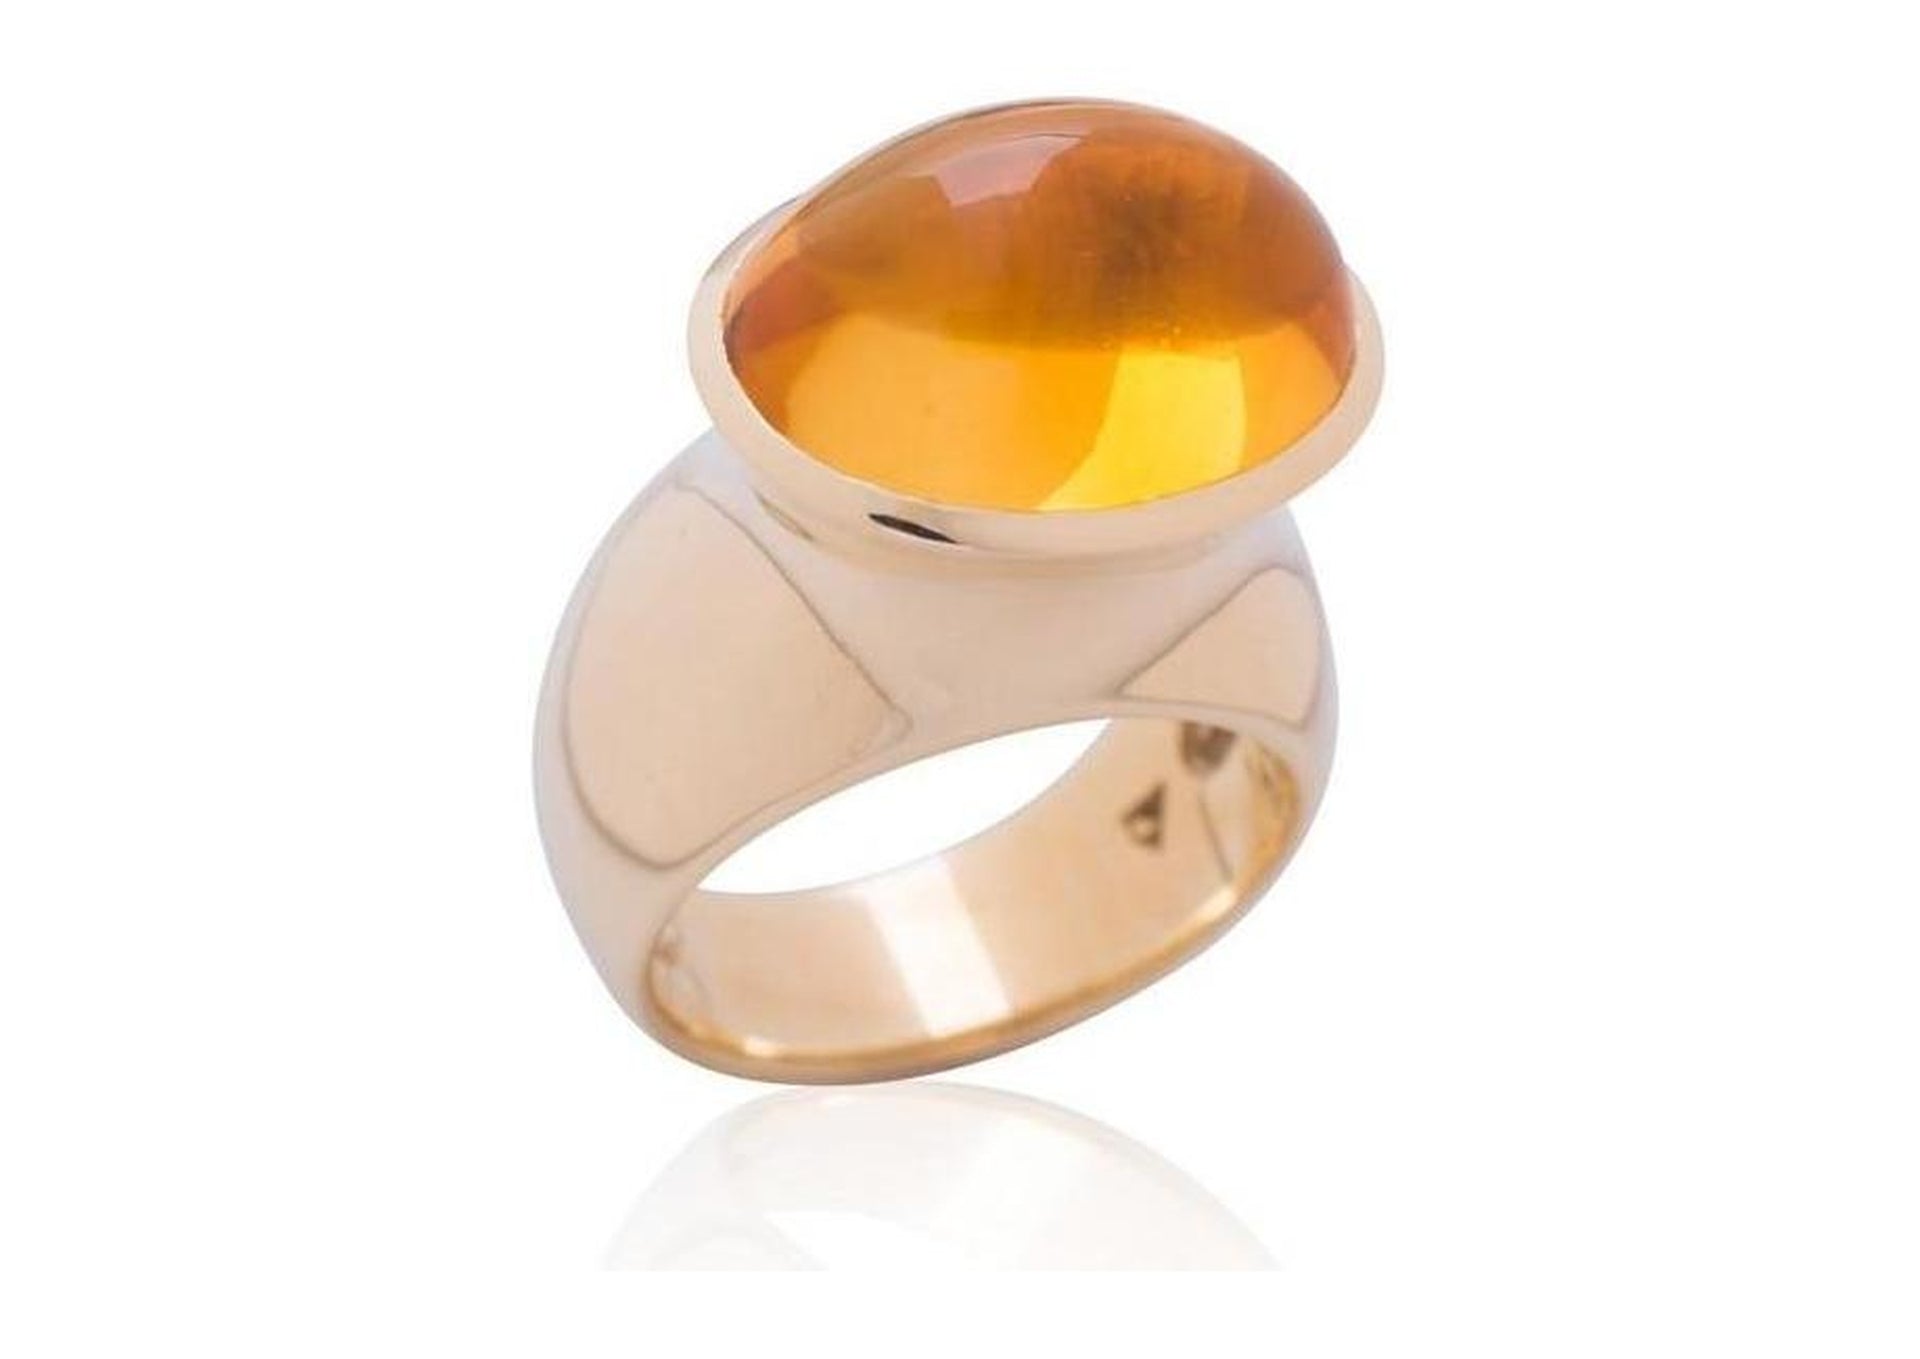 Luxurious Golden Citrine Ring.   - Jens Hansen - 1